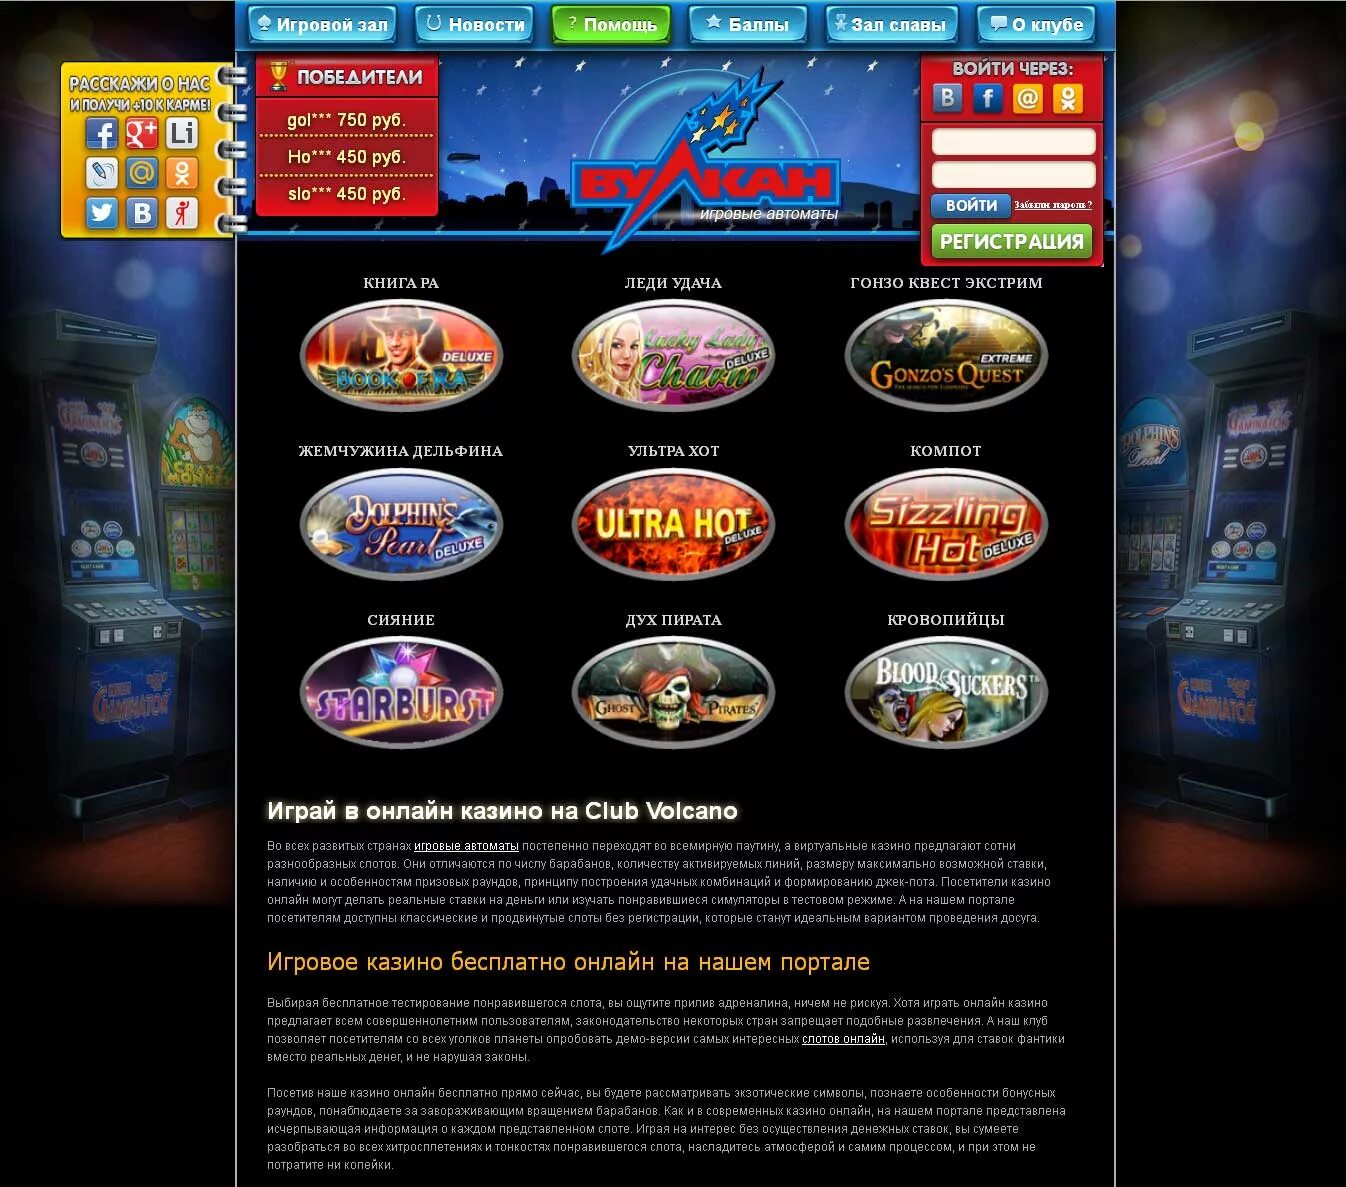 Сайт игровых автоматов slots casino. Эмуляторы игровых автоматов казино. Эмуляторы игровых автоматов казино вулкан. Эмулятор казино слотов.